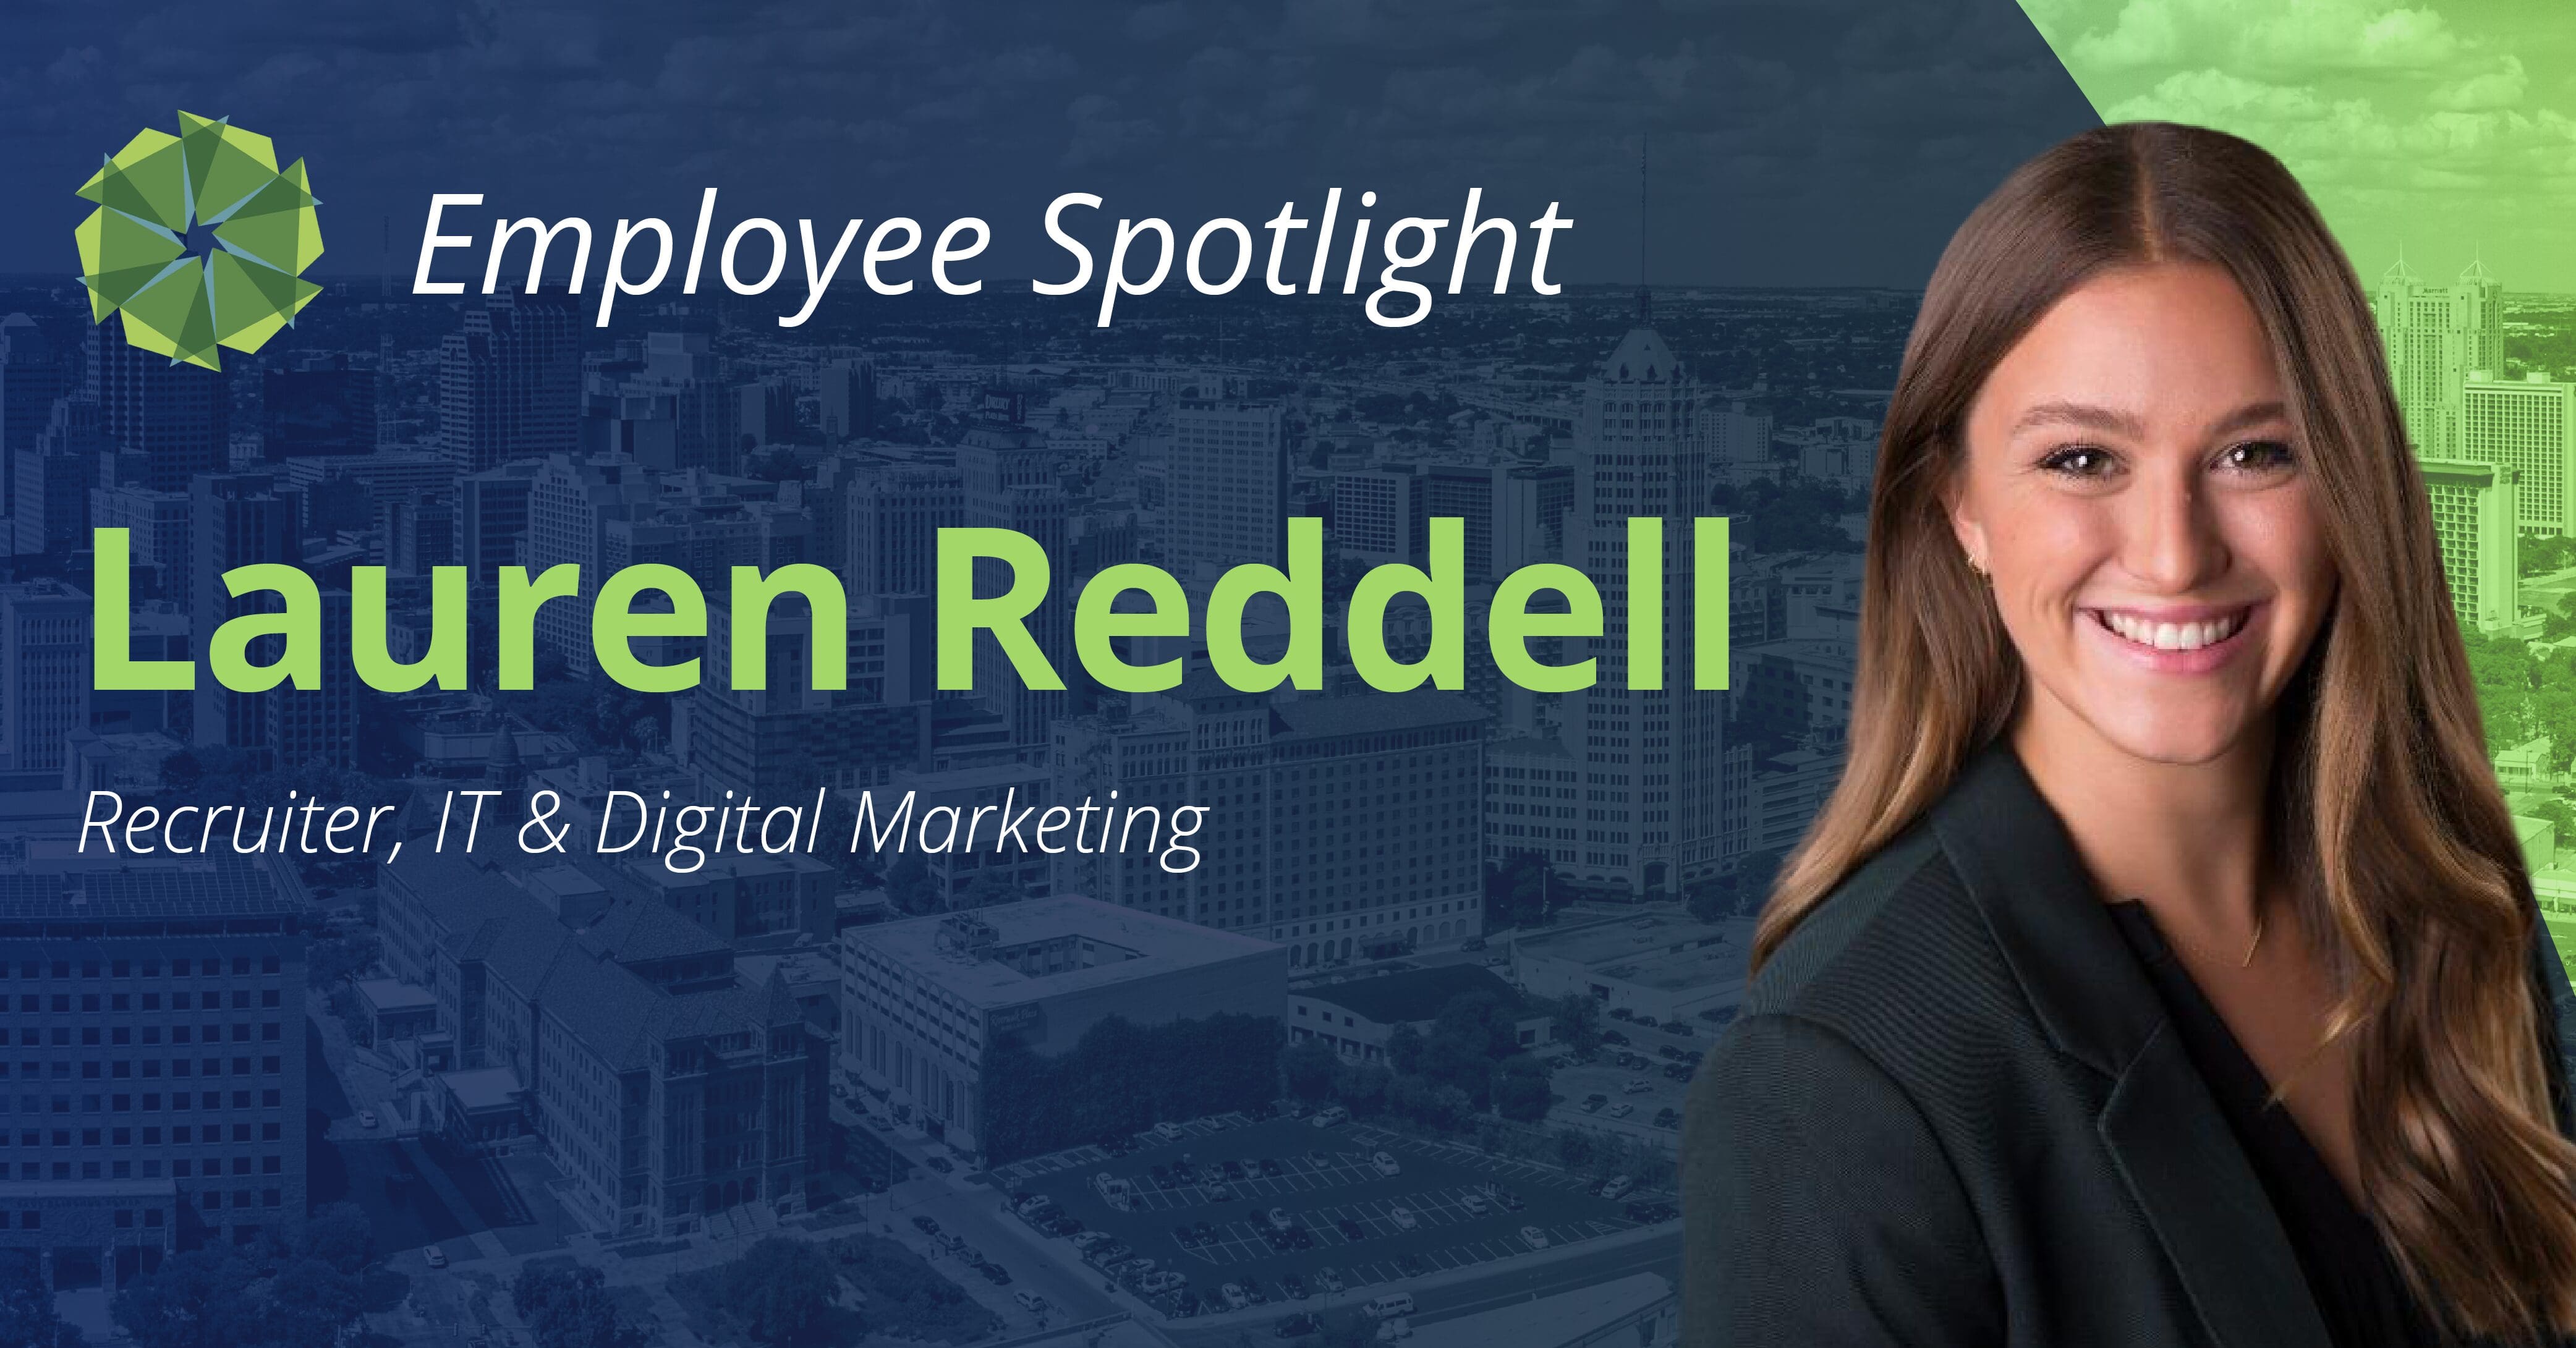 Lauren Reddell employee spotlight